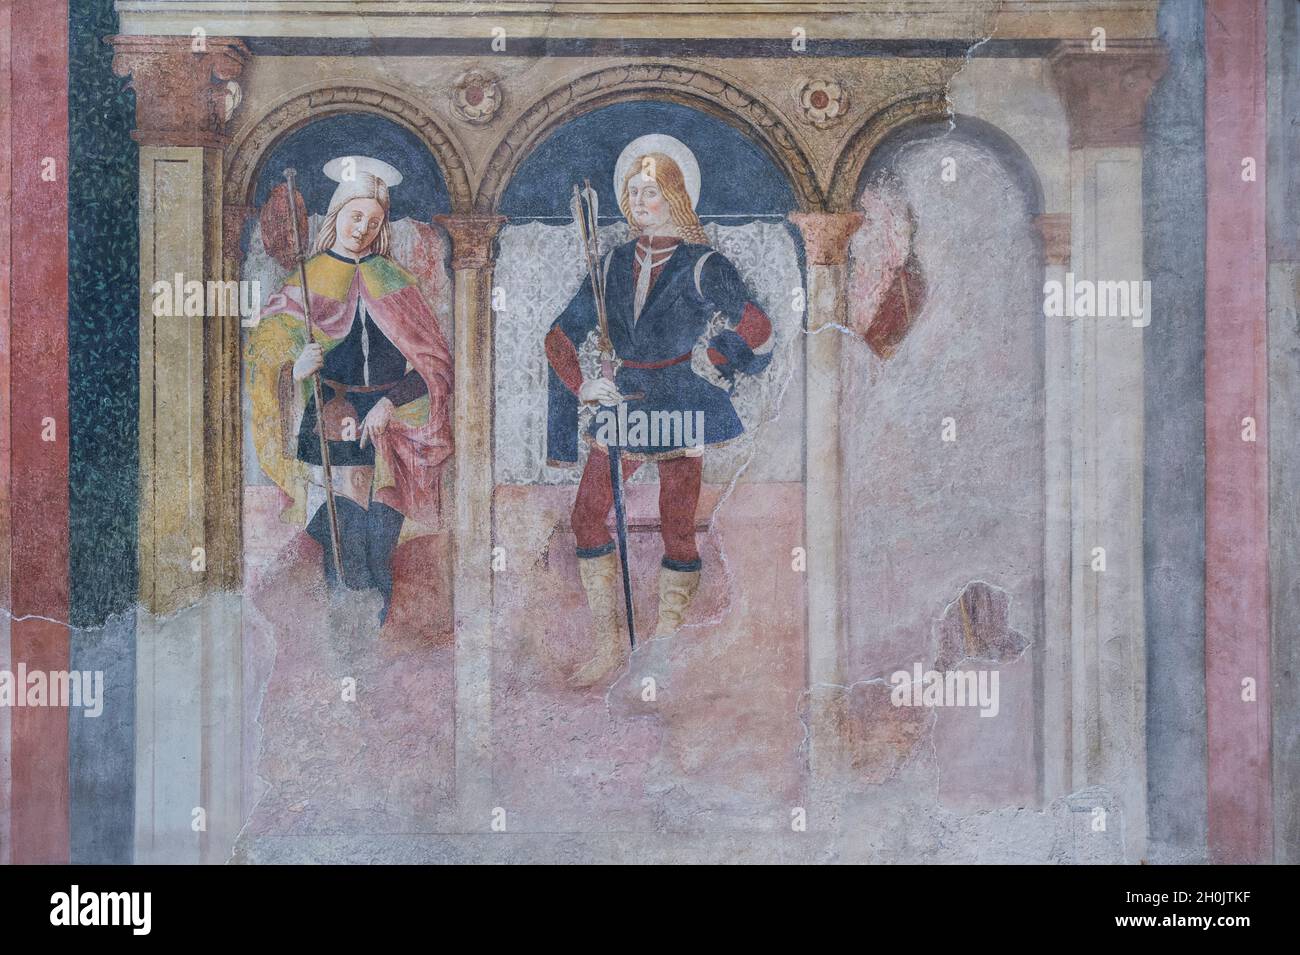 Italy, Piedmont, Monferrato, Ozzano Monferrato, San Salvatore church, frescoes Stock Photo